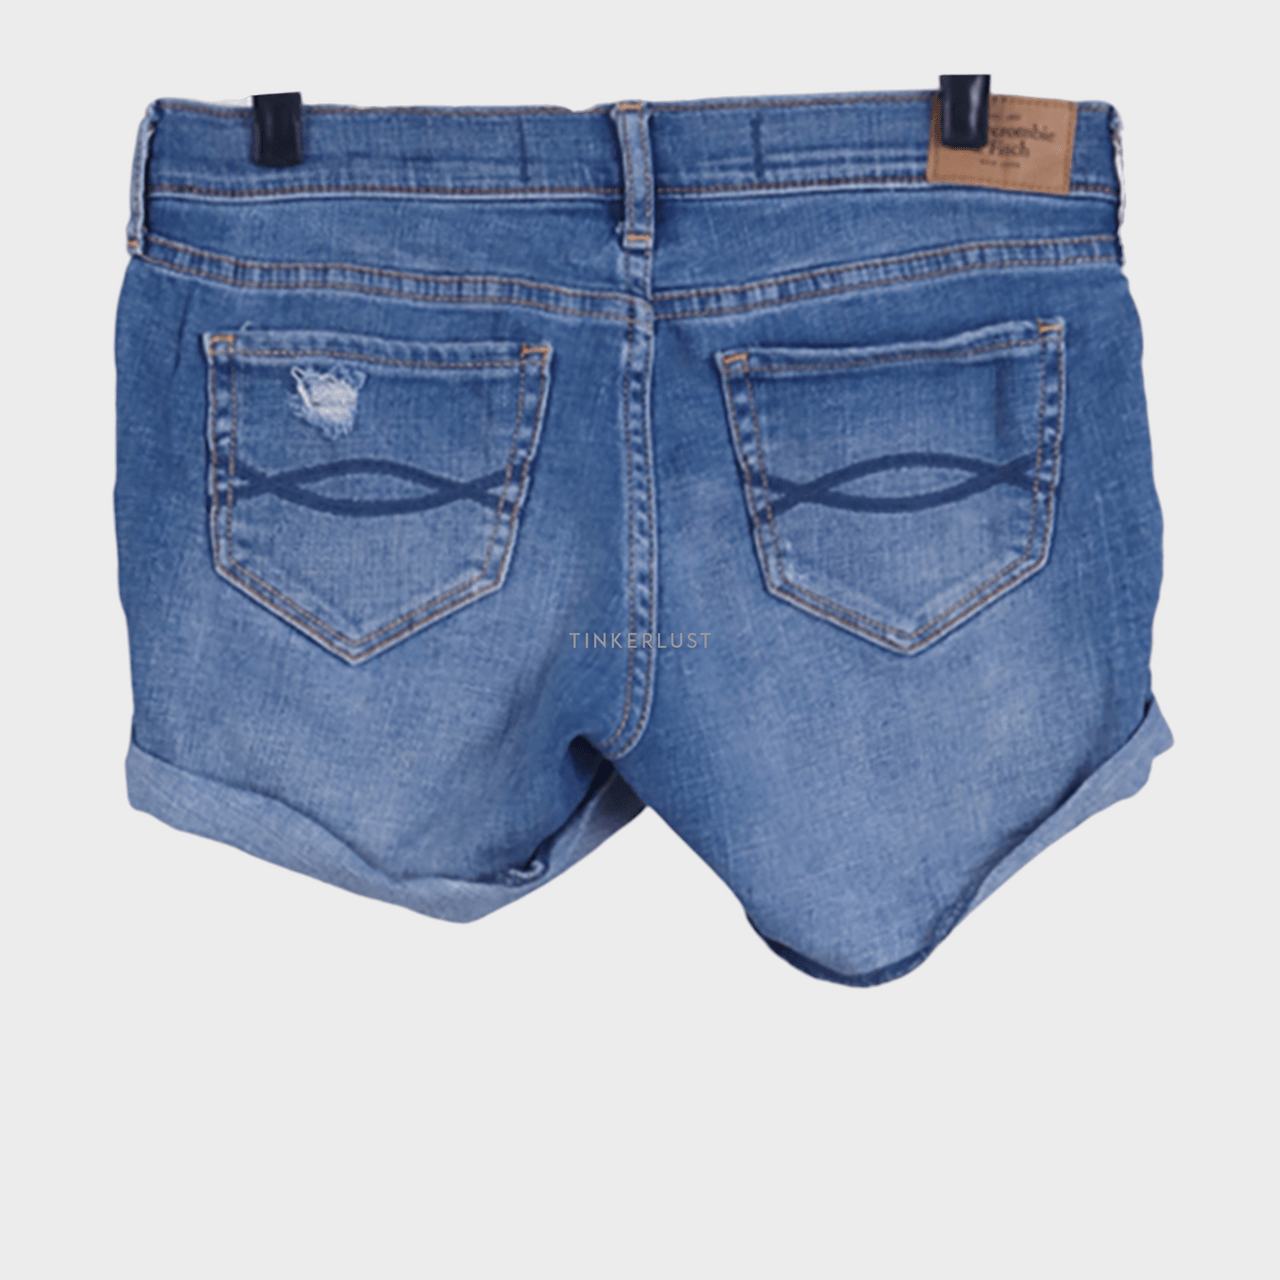 Abercrombie & Fitch Blue Jeans Short Pants